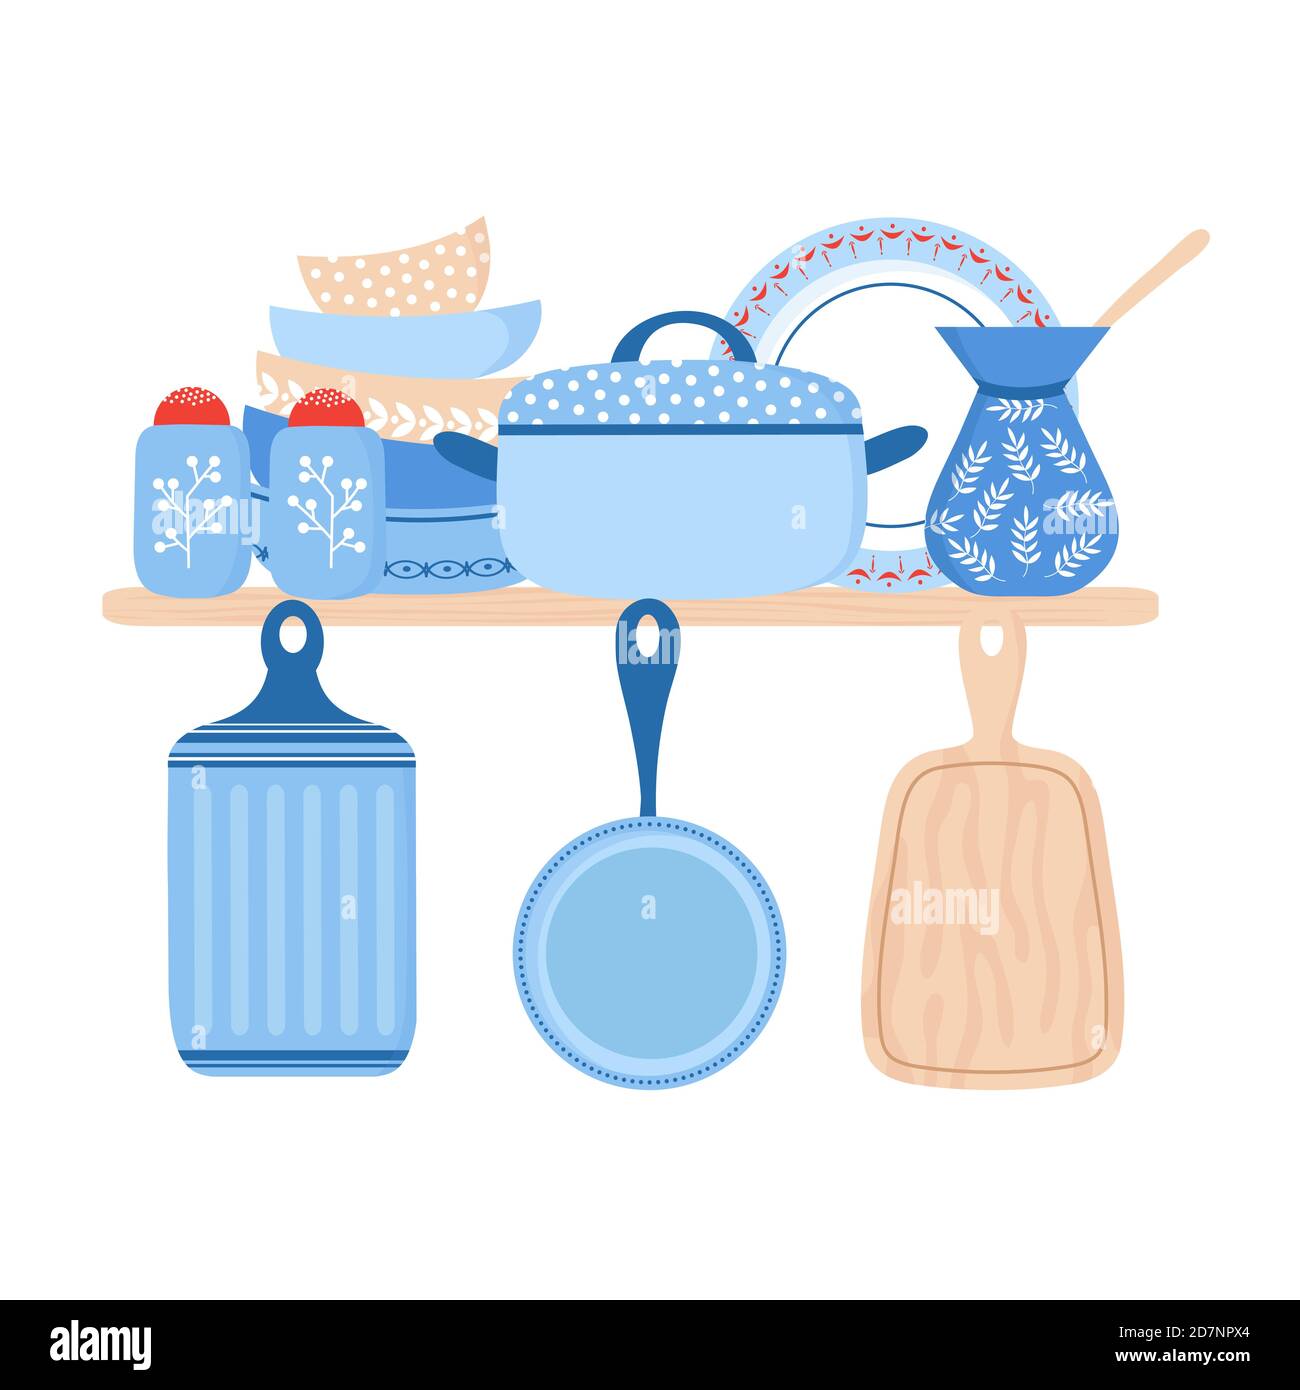 Vaisselle céramique batterie de cuisine. Illustrations vectorielles de plats, casseroles et bols en porcelaine bleue. Vaisselle assiette en porcelaine, poterie et vaisselle Illustration de Vecteur